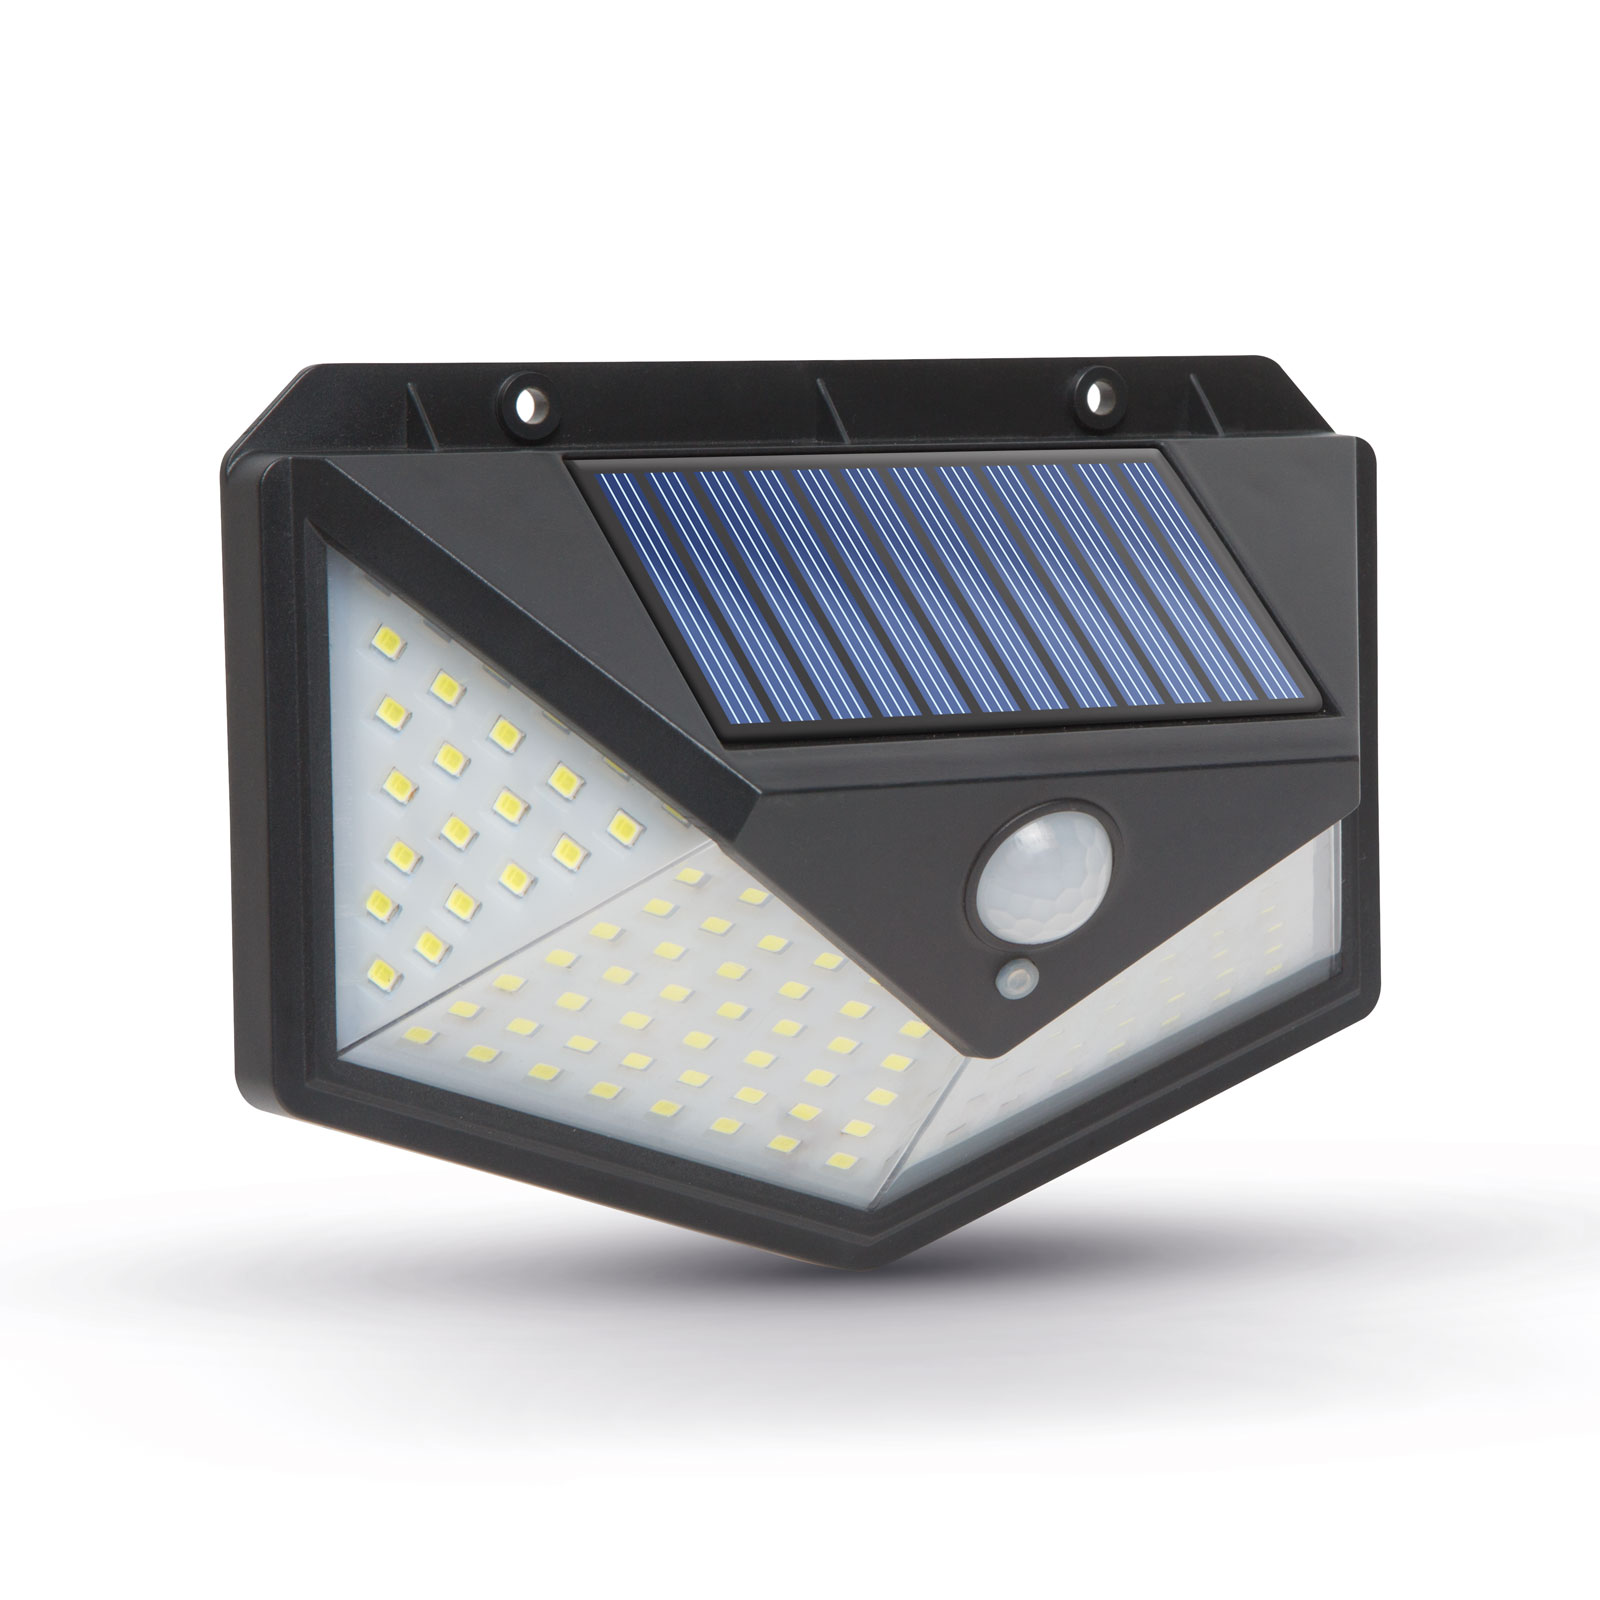 Reflector solar cu senzor de miscare - perete - 136 LED thumb